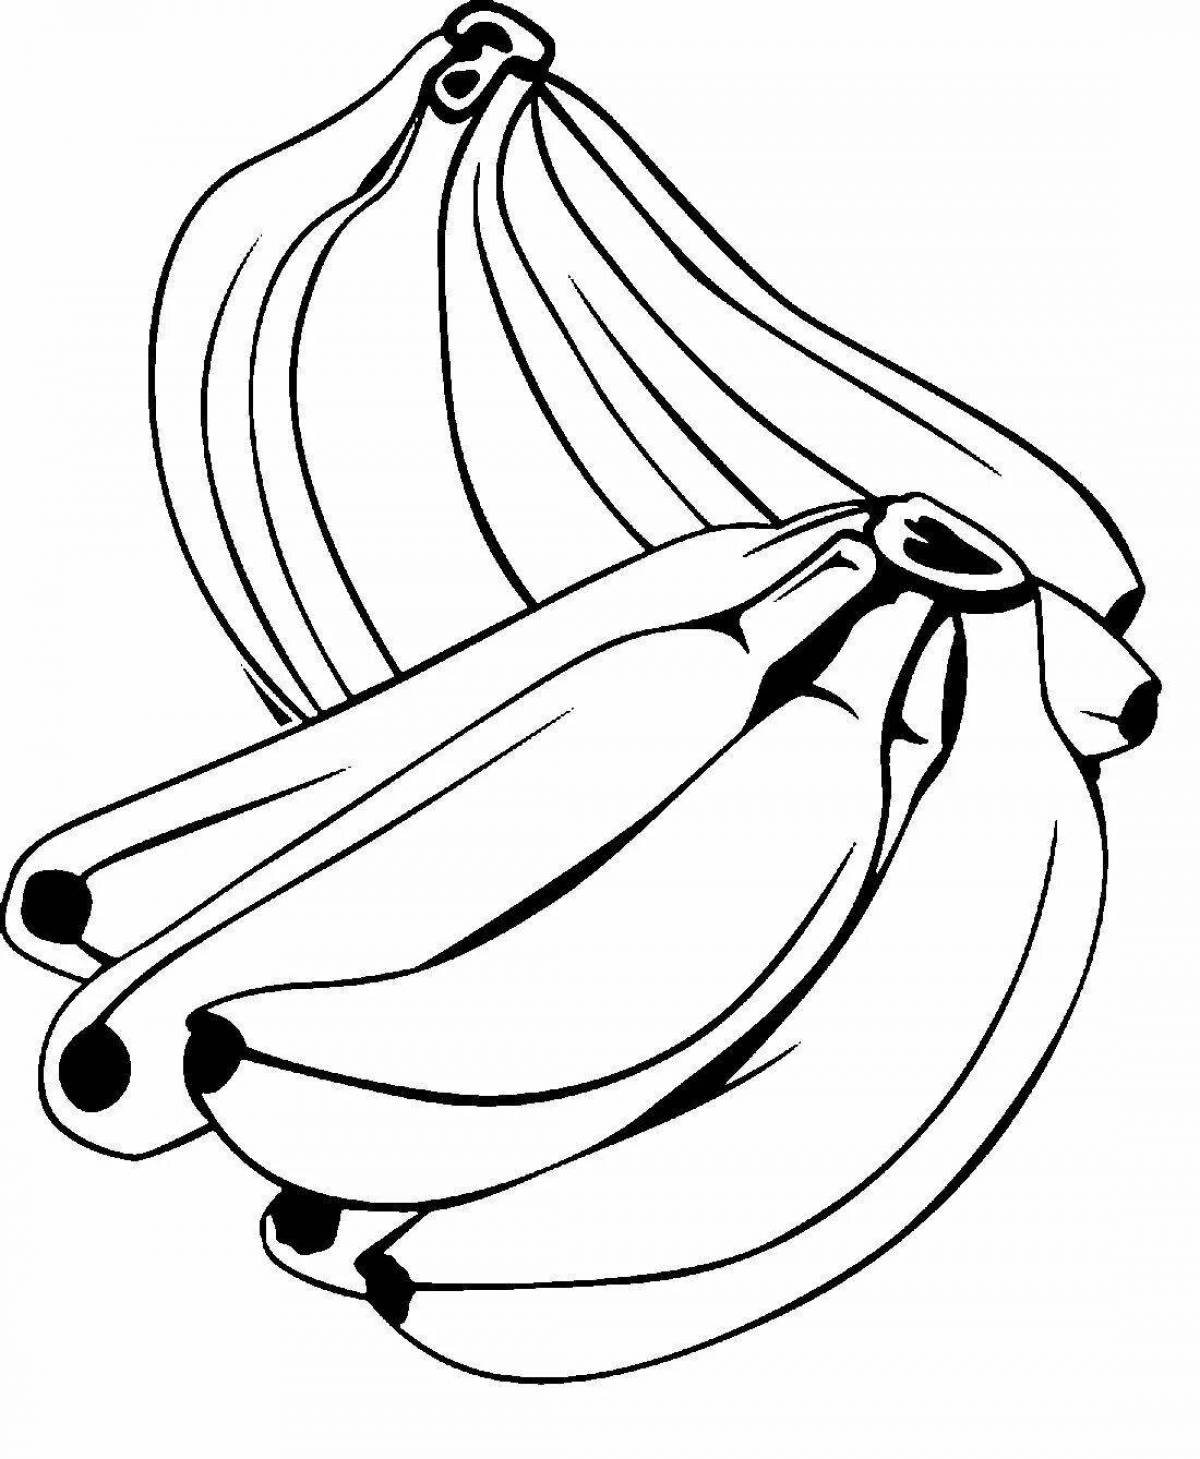 Красочный рисунок банана